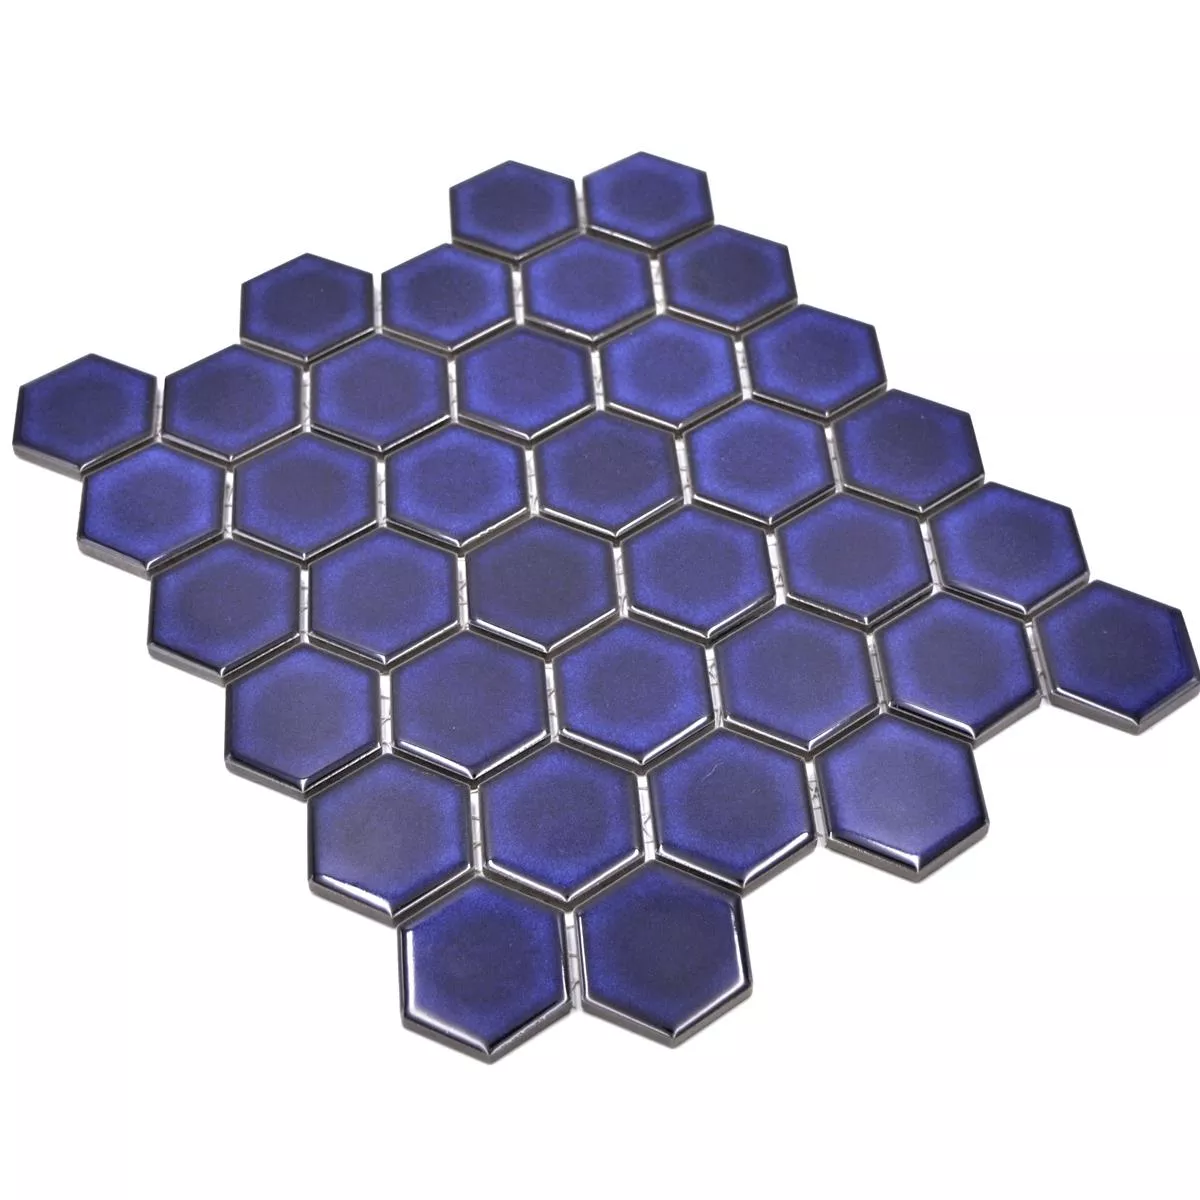 Sample van Keramiek Mozaïek Salomon Hexagon Kobalt Blauw H51